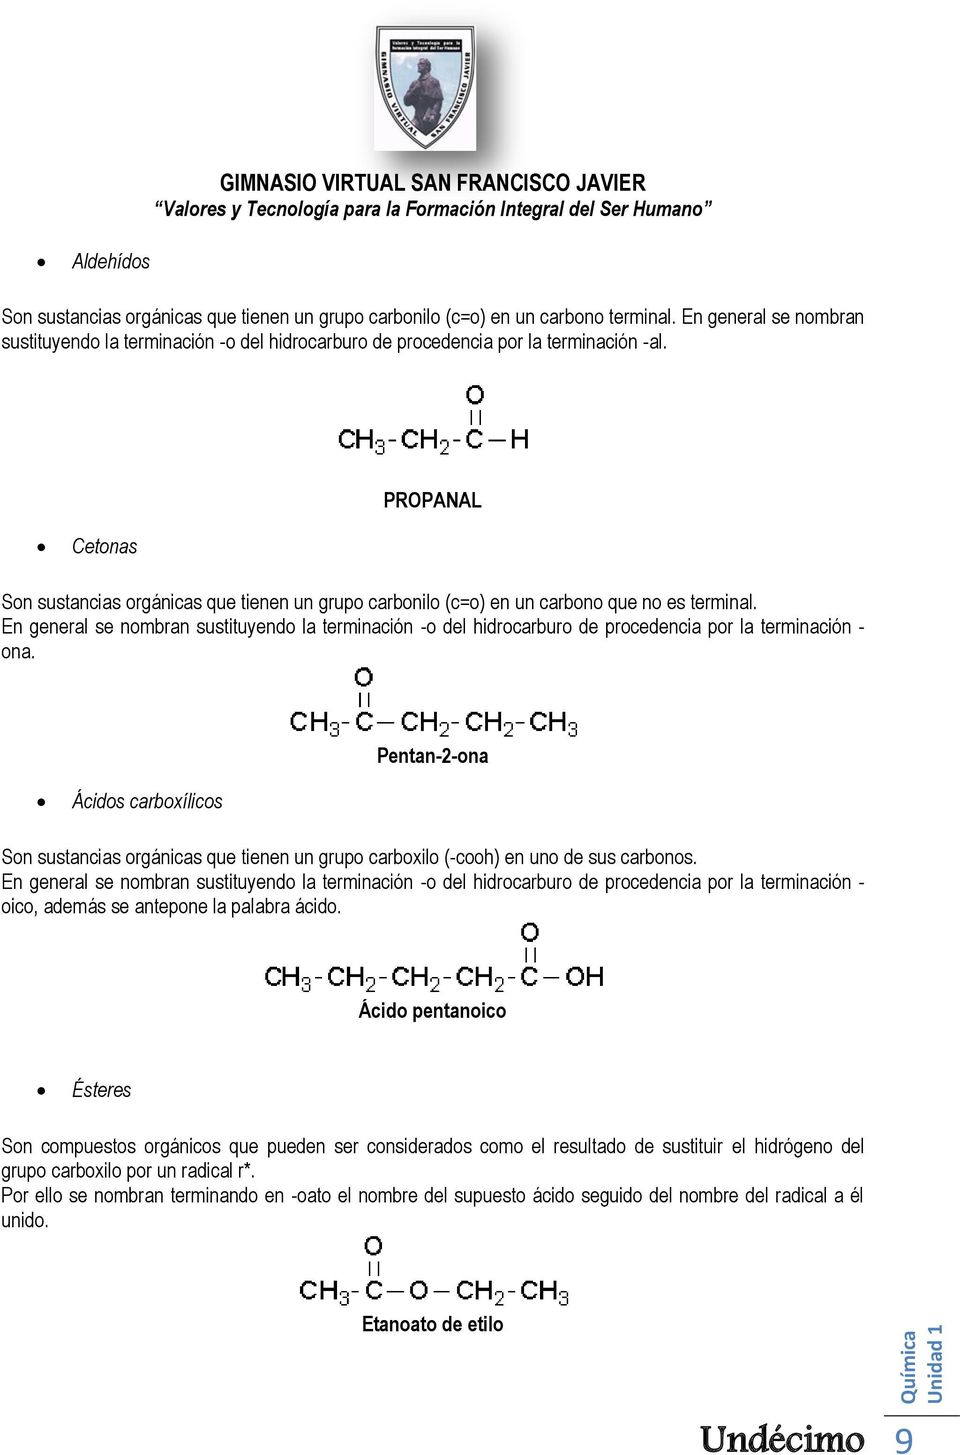 PROPANAL Cetonas Son sustancias orgánicas que tienen un grupo carbonilo (c=o) en un carbono que no es terminal.